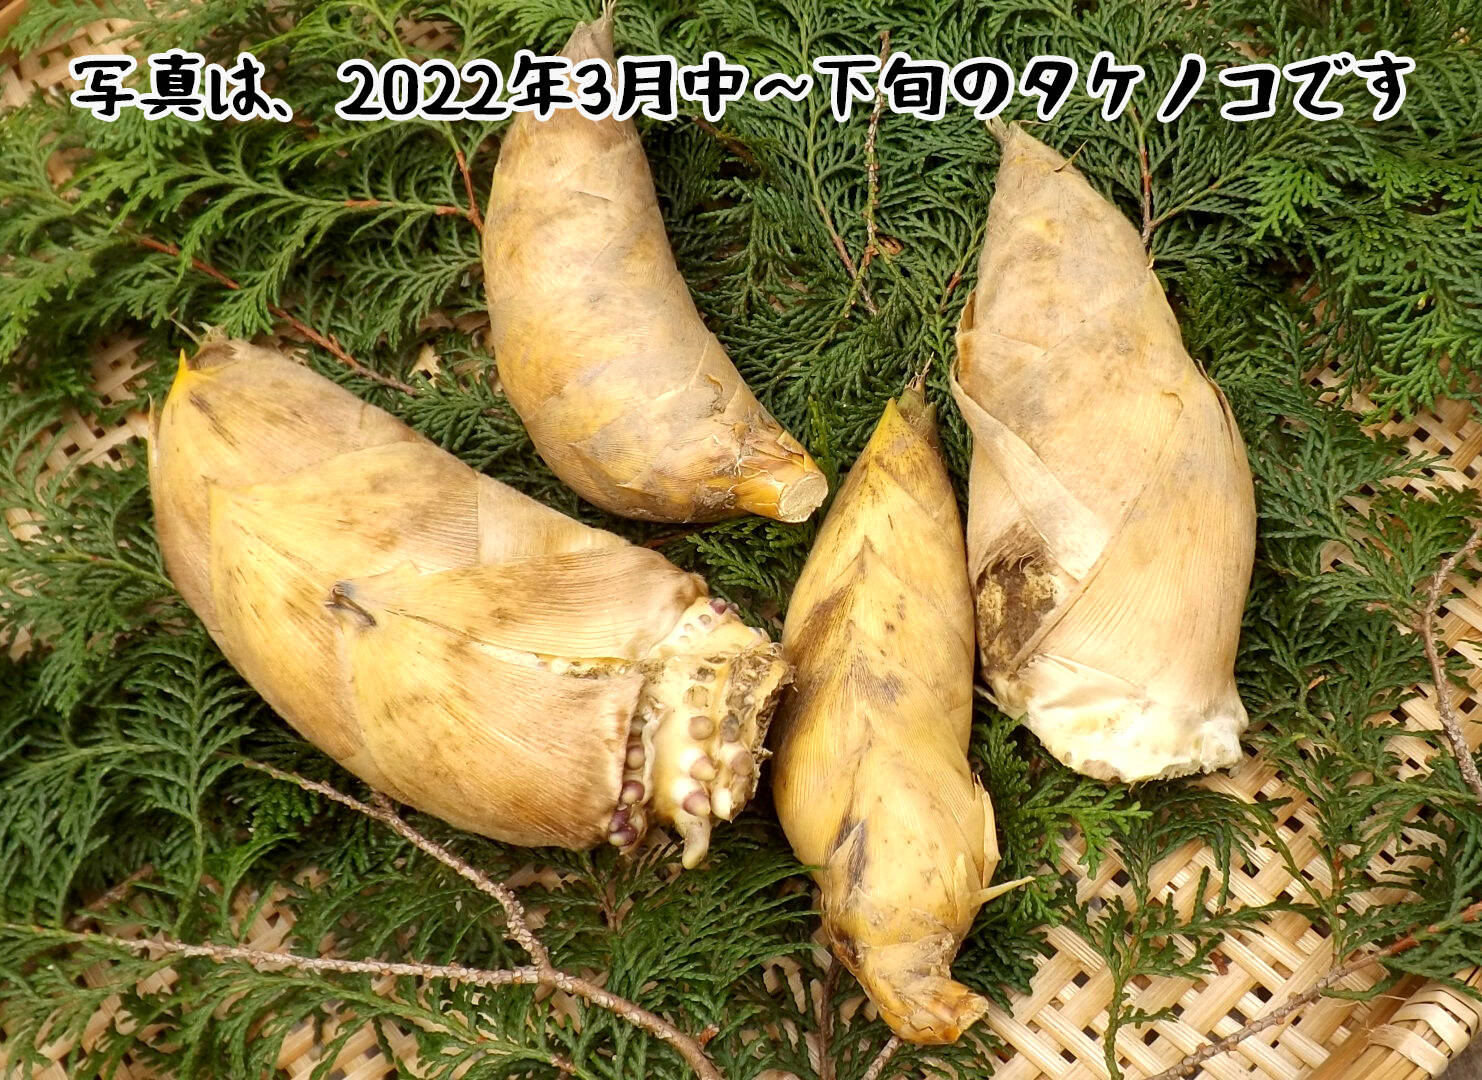 たけのこ 5キロ 筍 三重県産 糠つき - 野菜